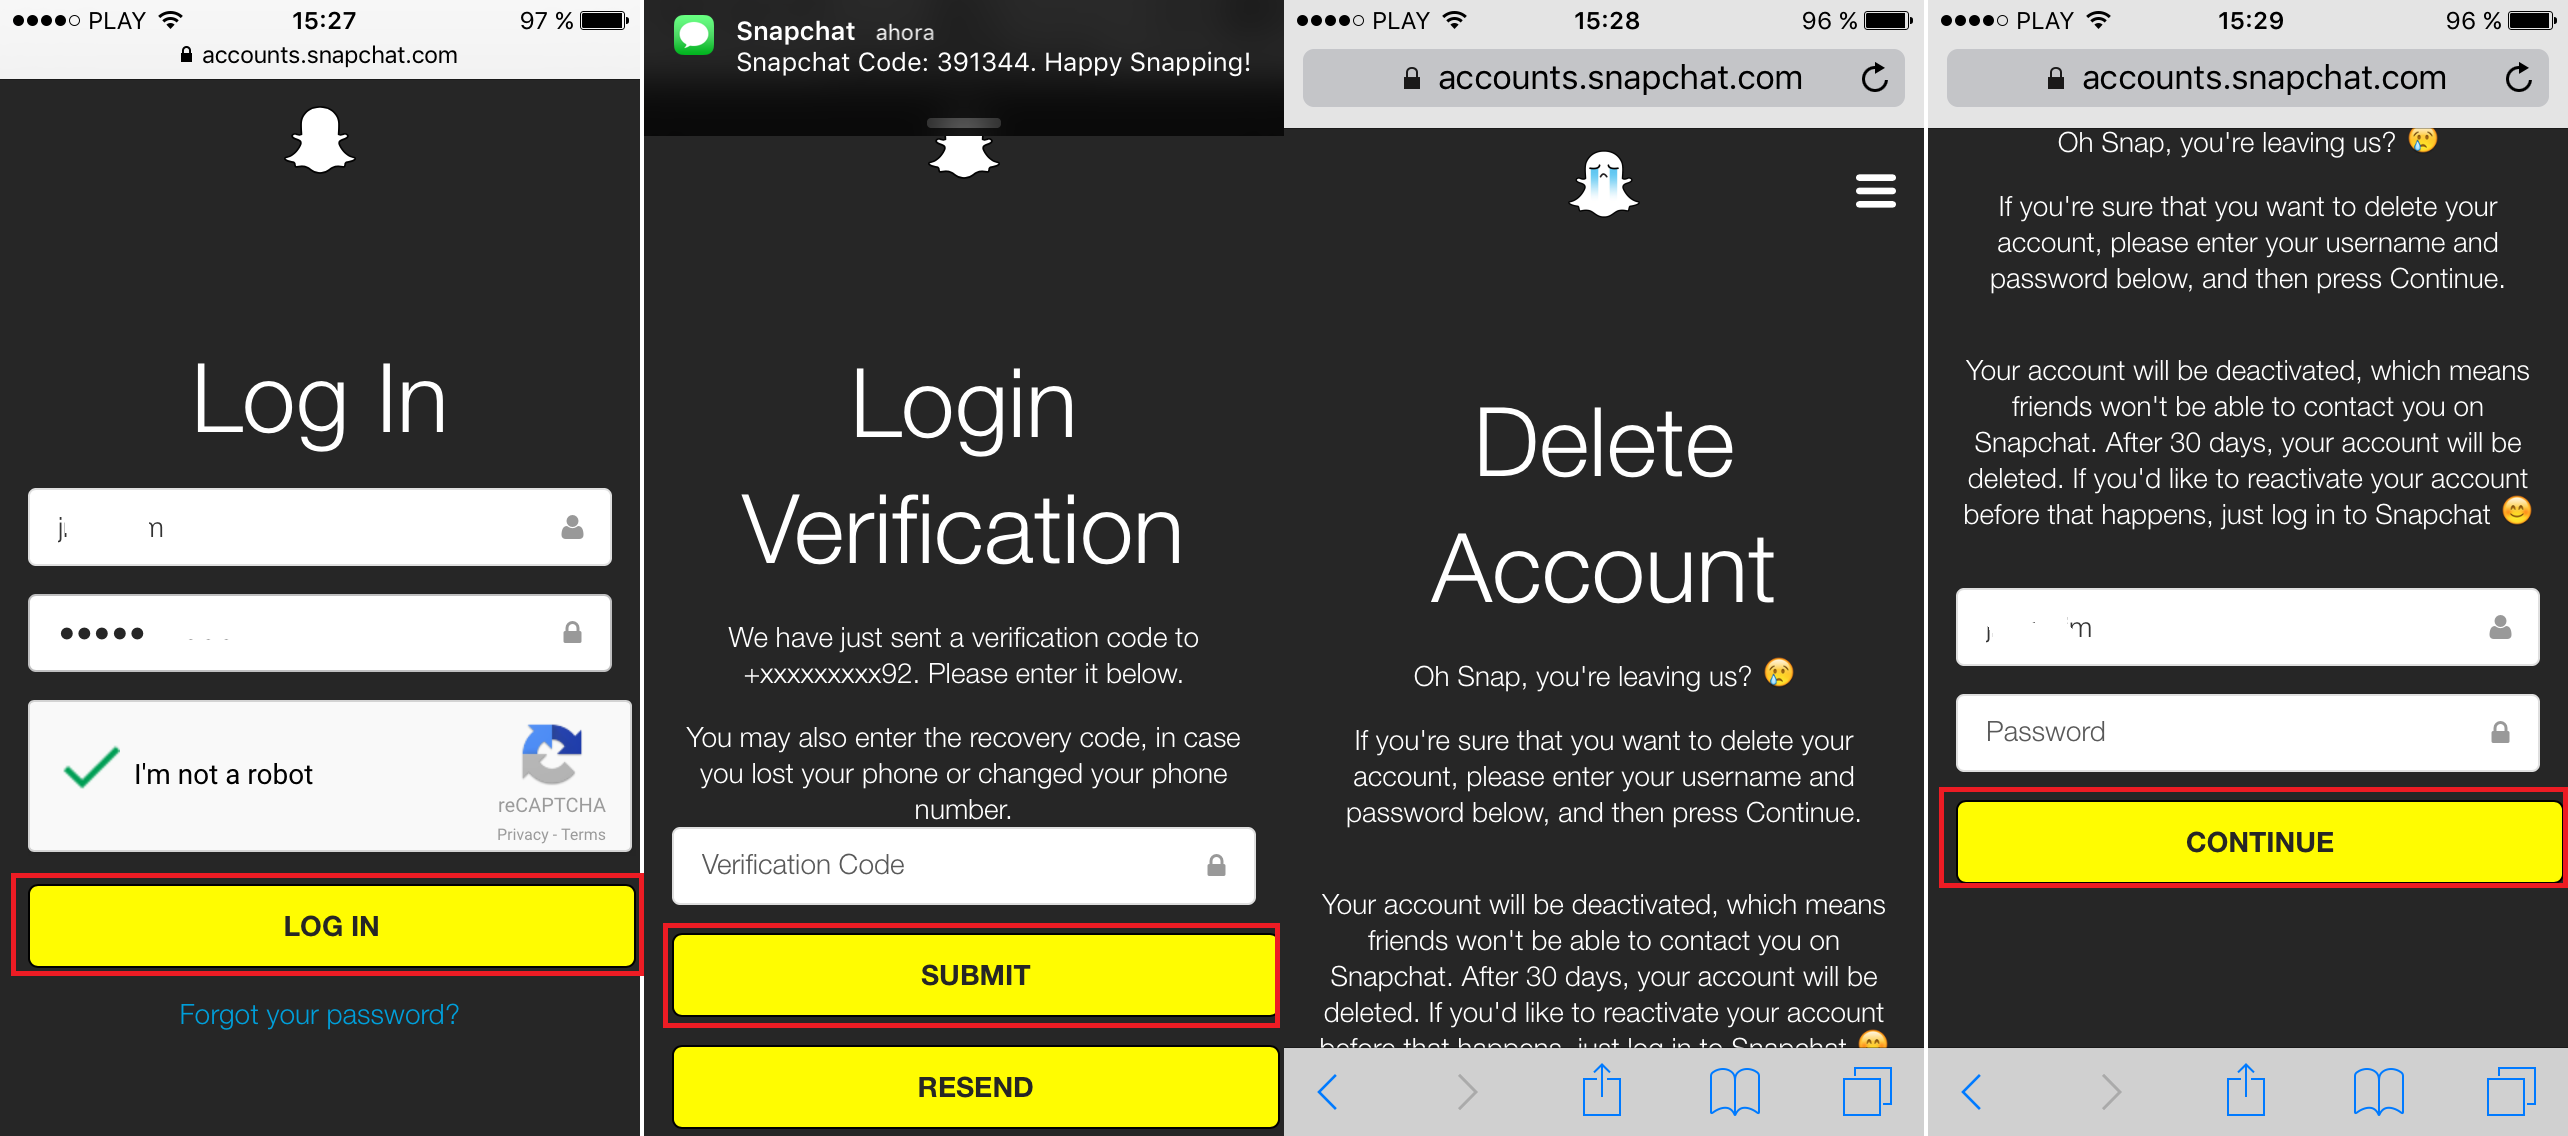 Como eliminar permanentemente tu cuenta de Snapchat. (Android e iOS)